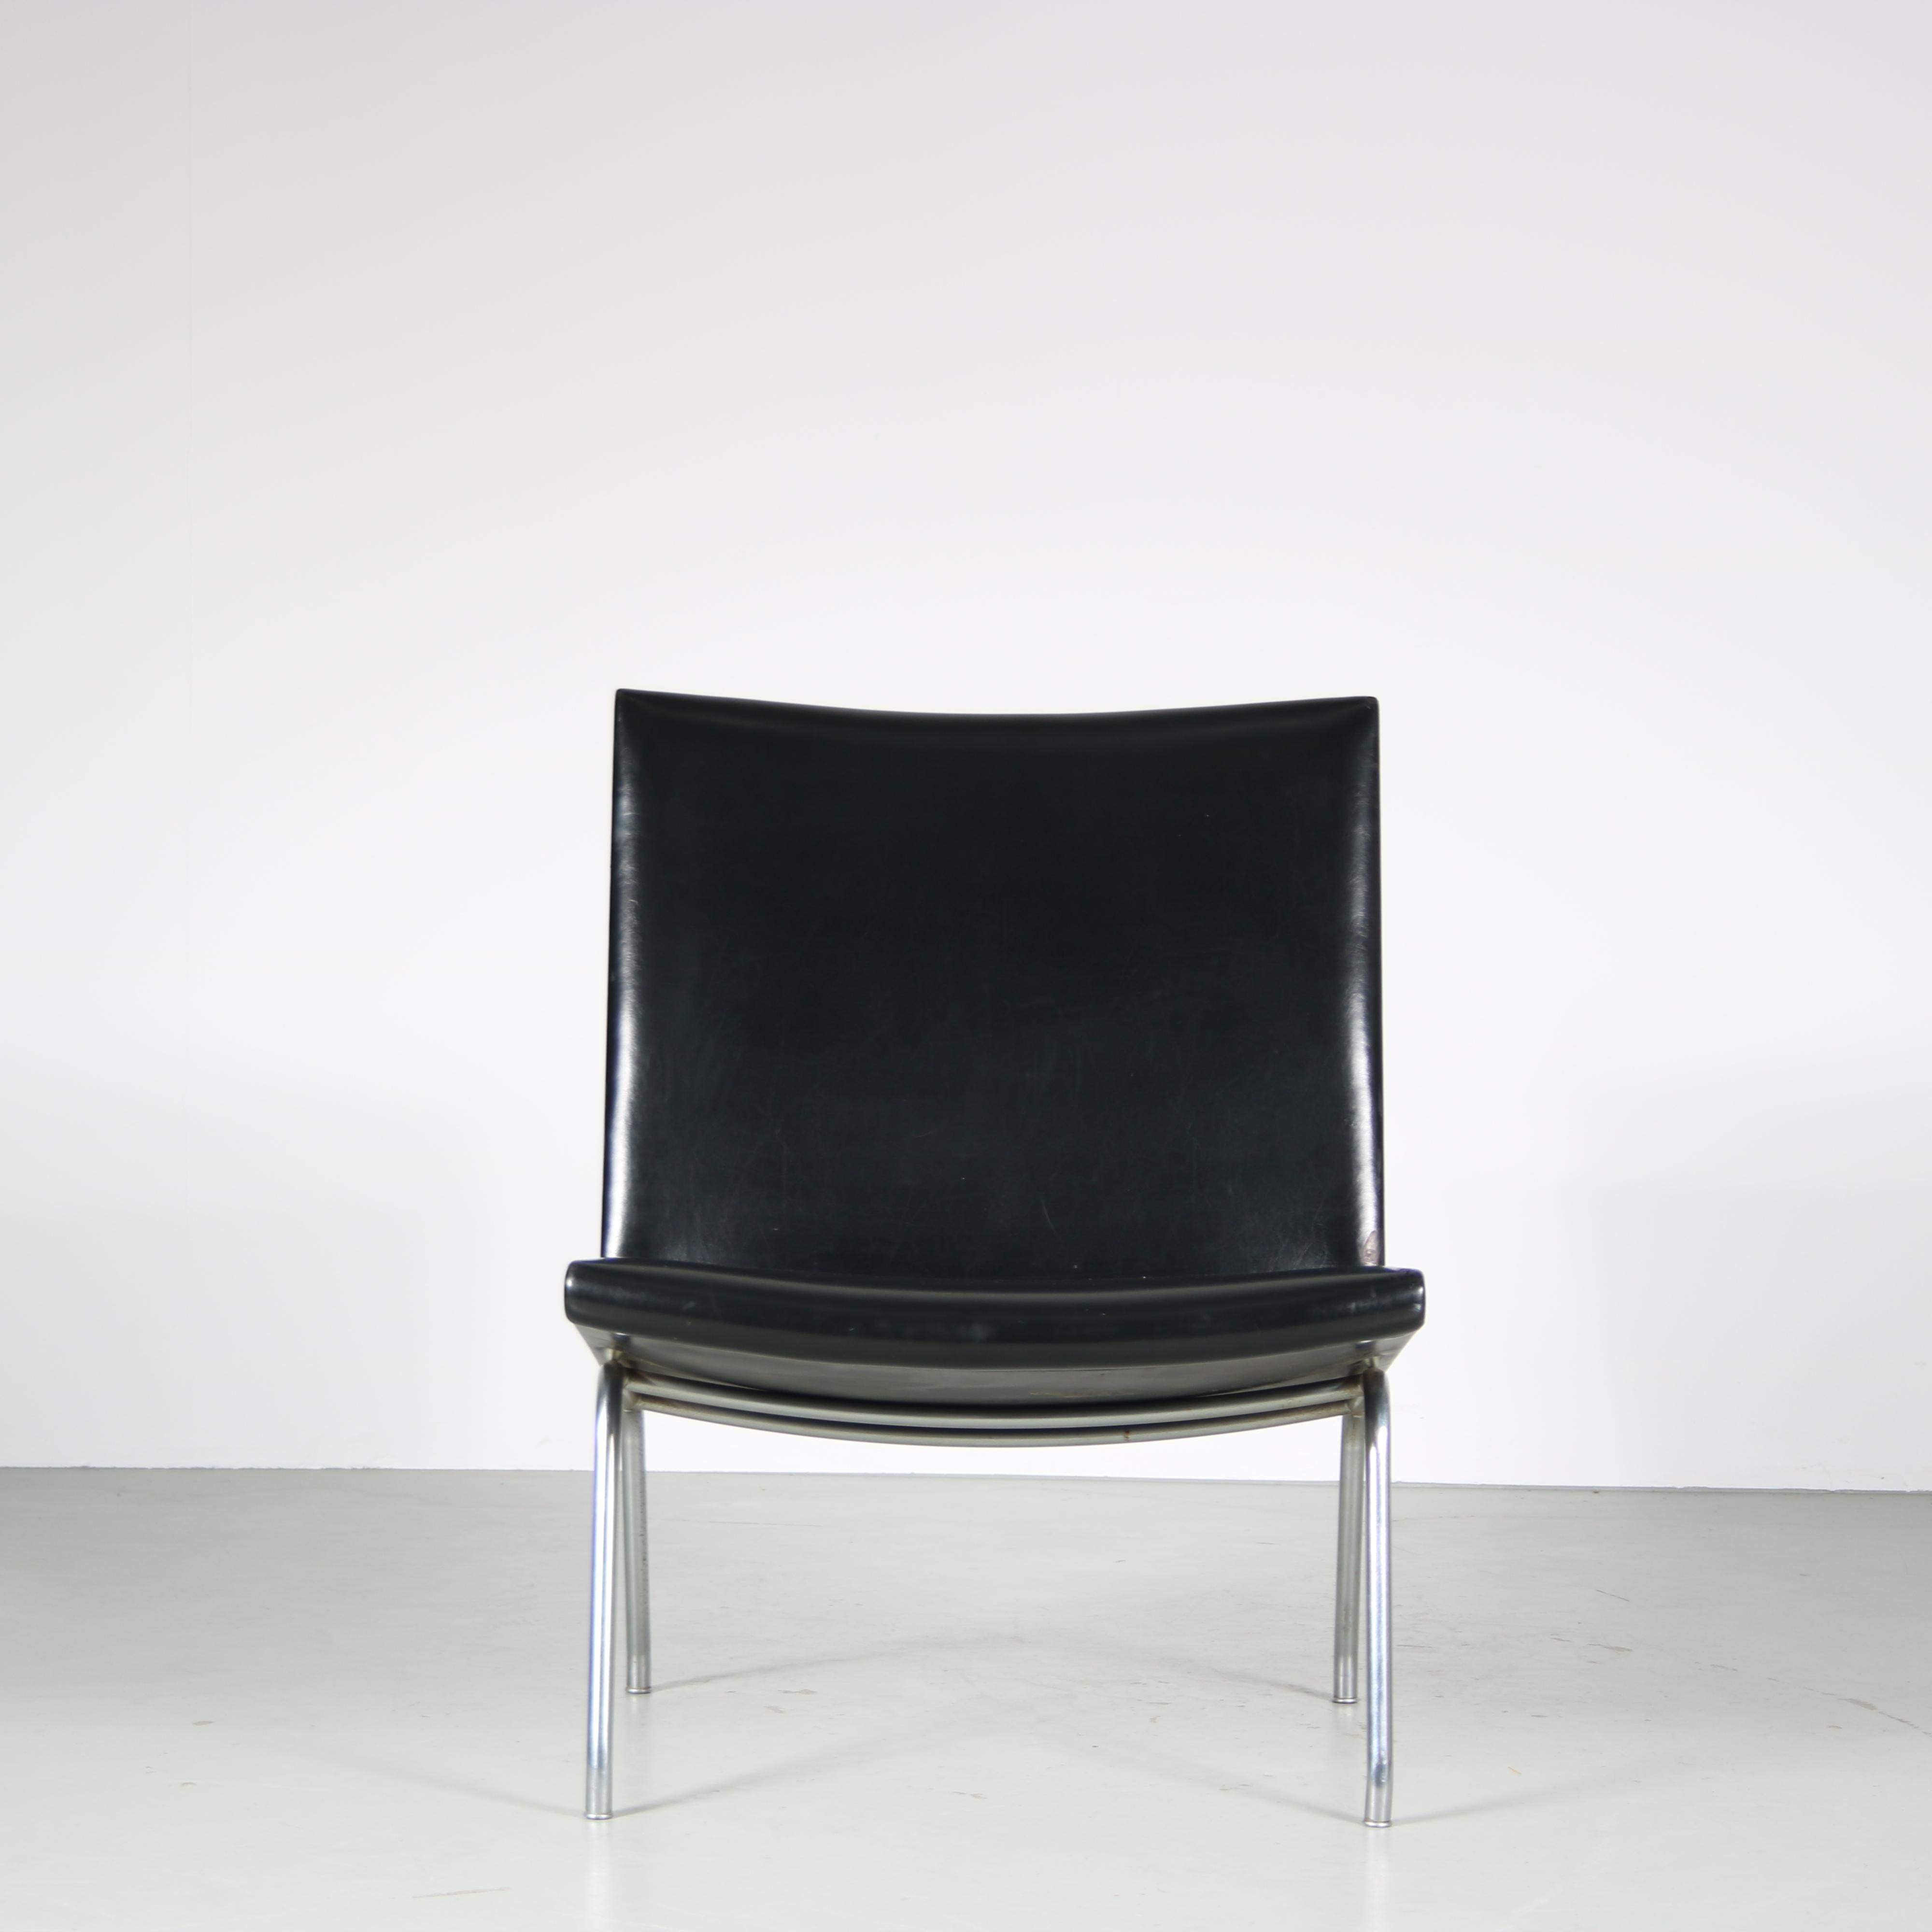 Hans J. Wegner “Airport” Chairs for Ap Stolen, Denmark For Sale 5